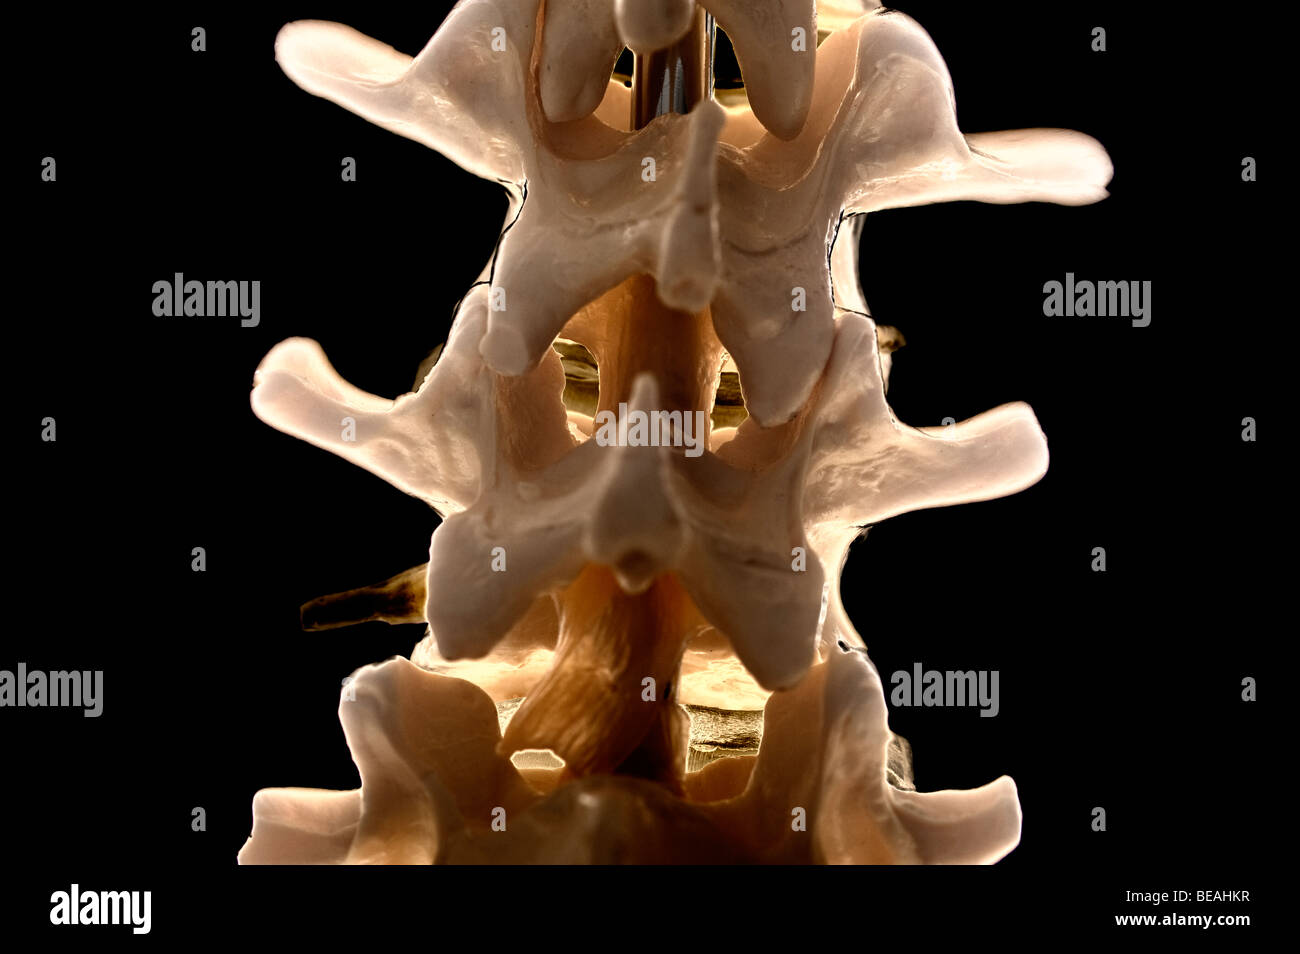 Primer plano de una columna vertebral humana mostrando las vértebras lumbares y discos vertebrales Foto de stock